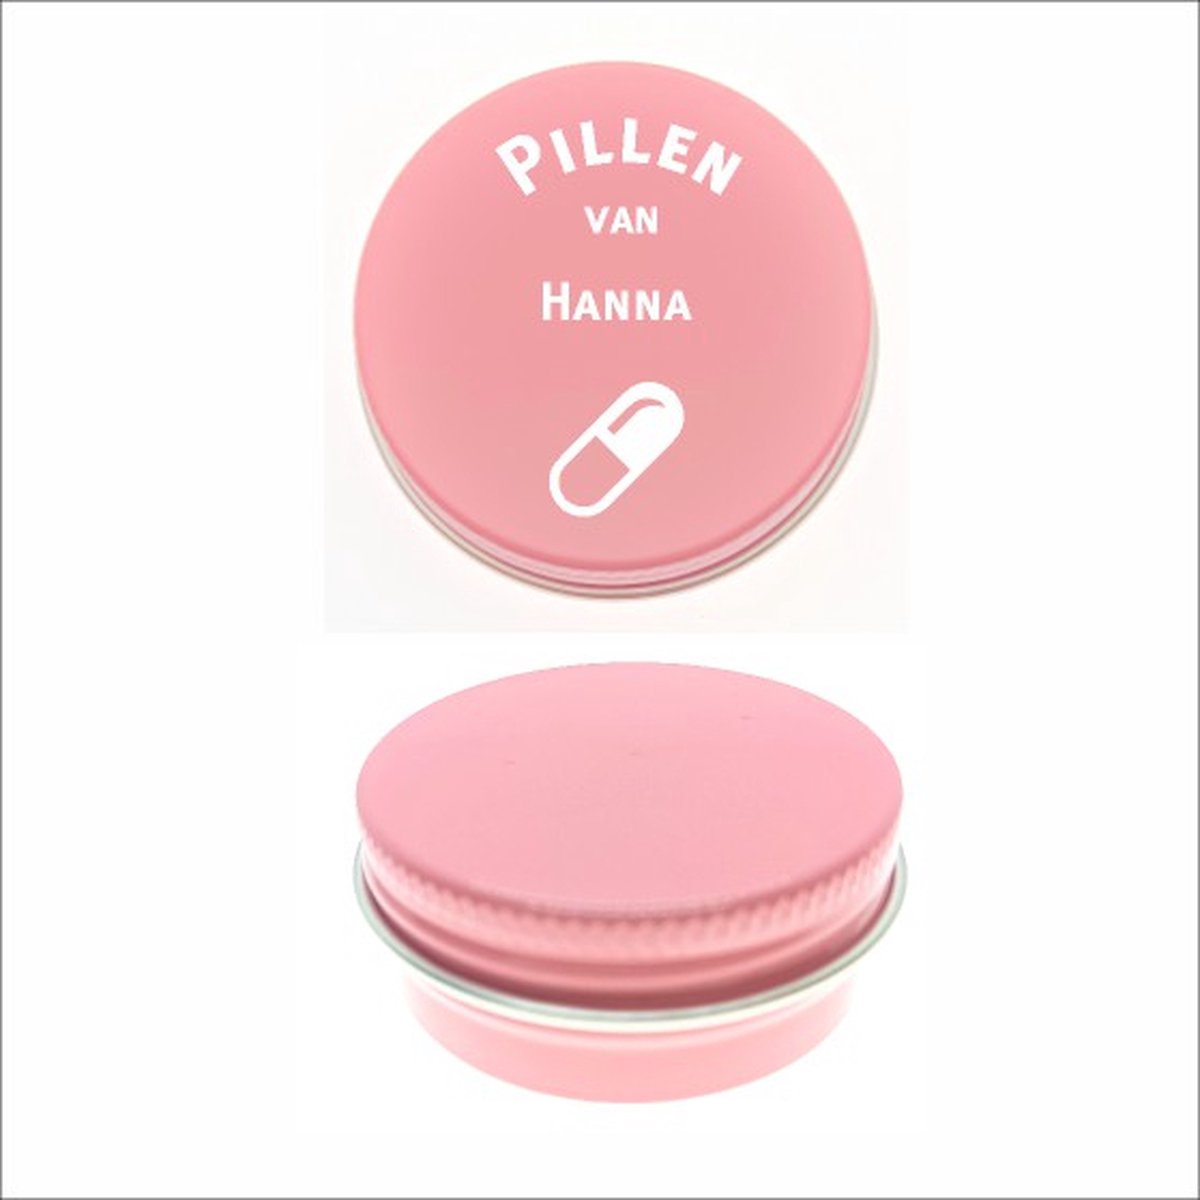 Pillen Blikje Met Naam Gravering - Hanna